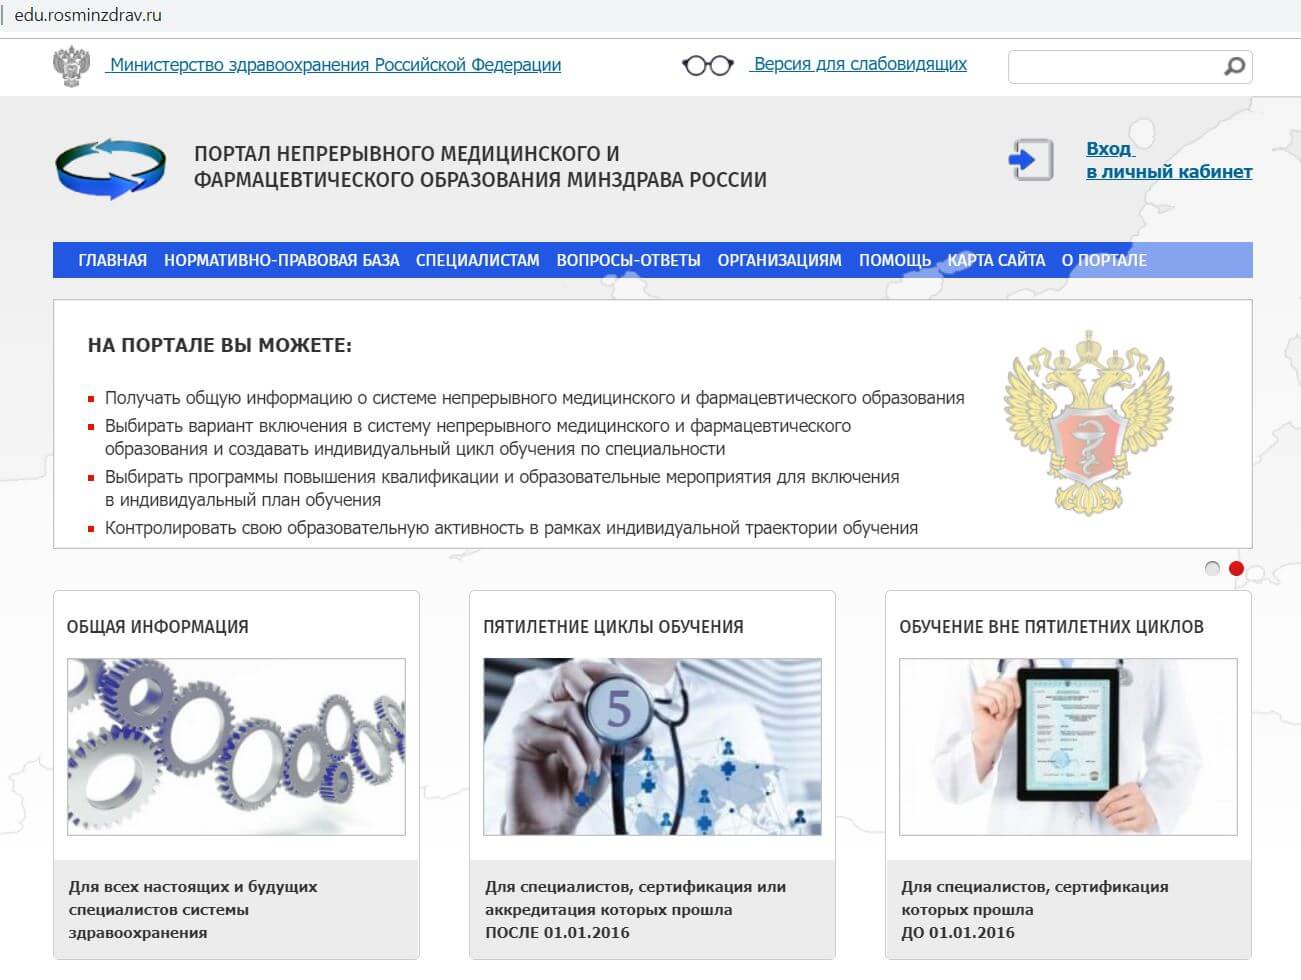 главная страница сайта edu.rosminzdrav.ru